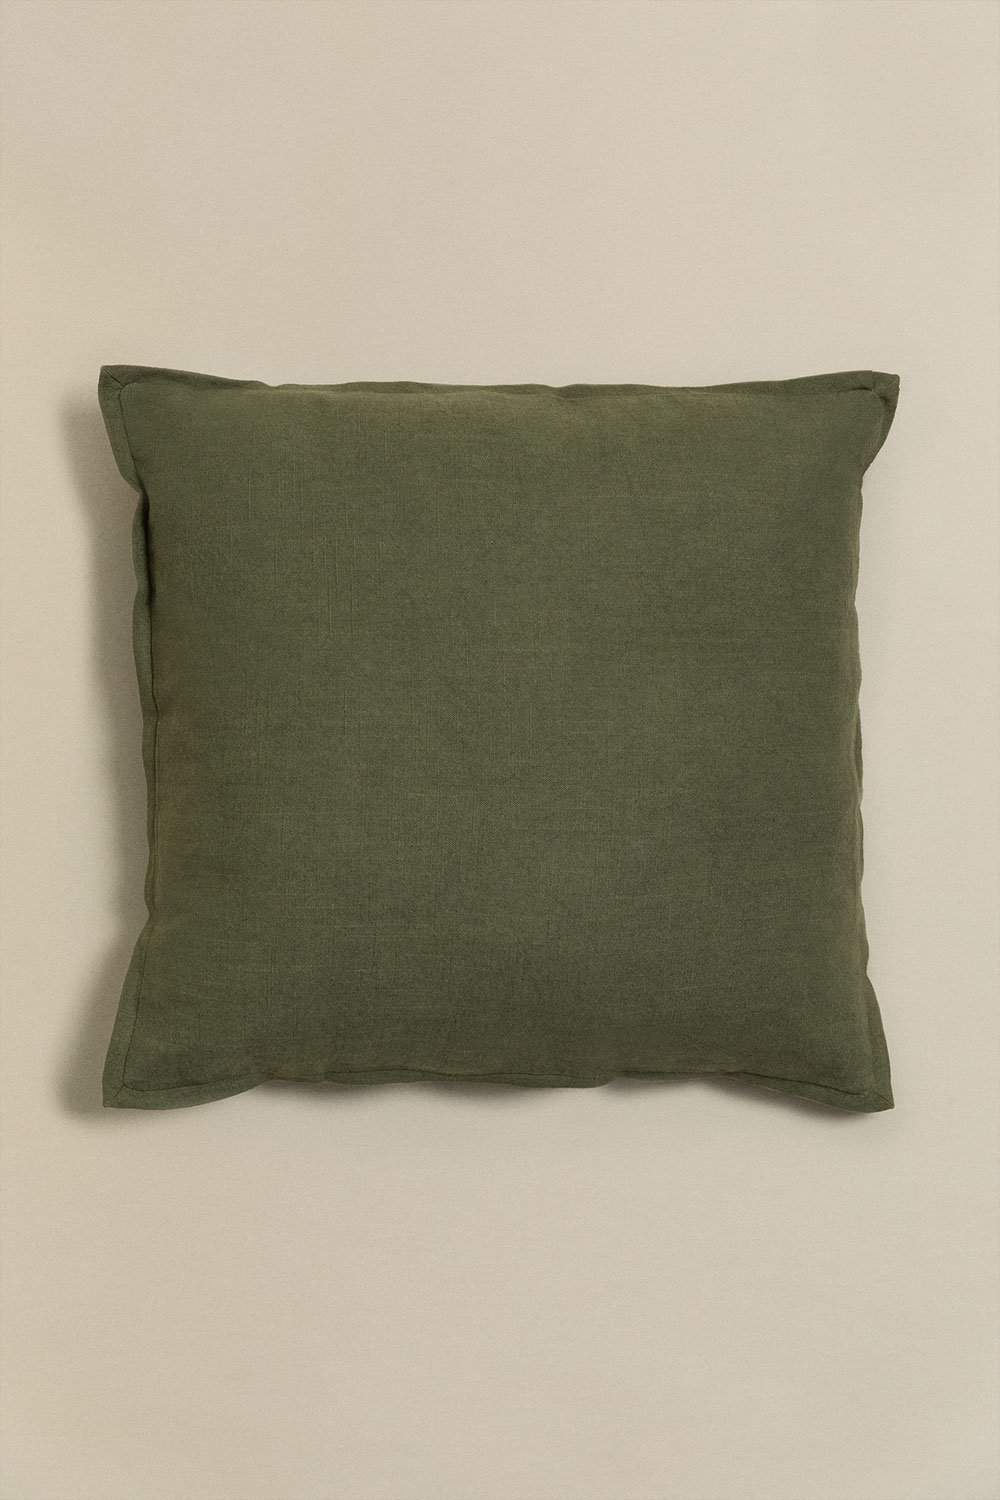 Cuscino quadrato in cotone (45x45 cm) Elezar, immagine della galleria 1